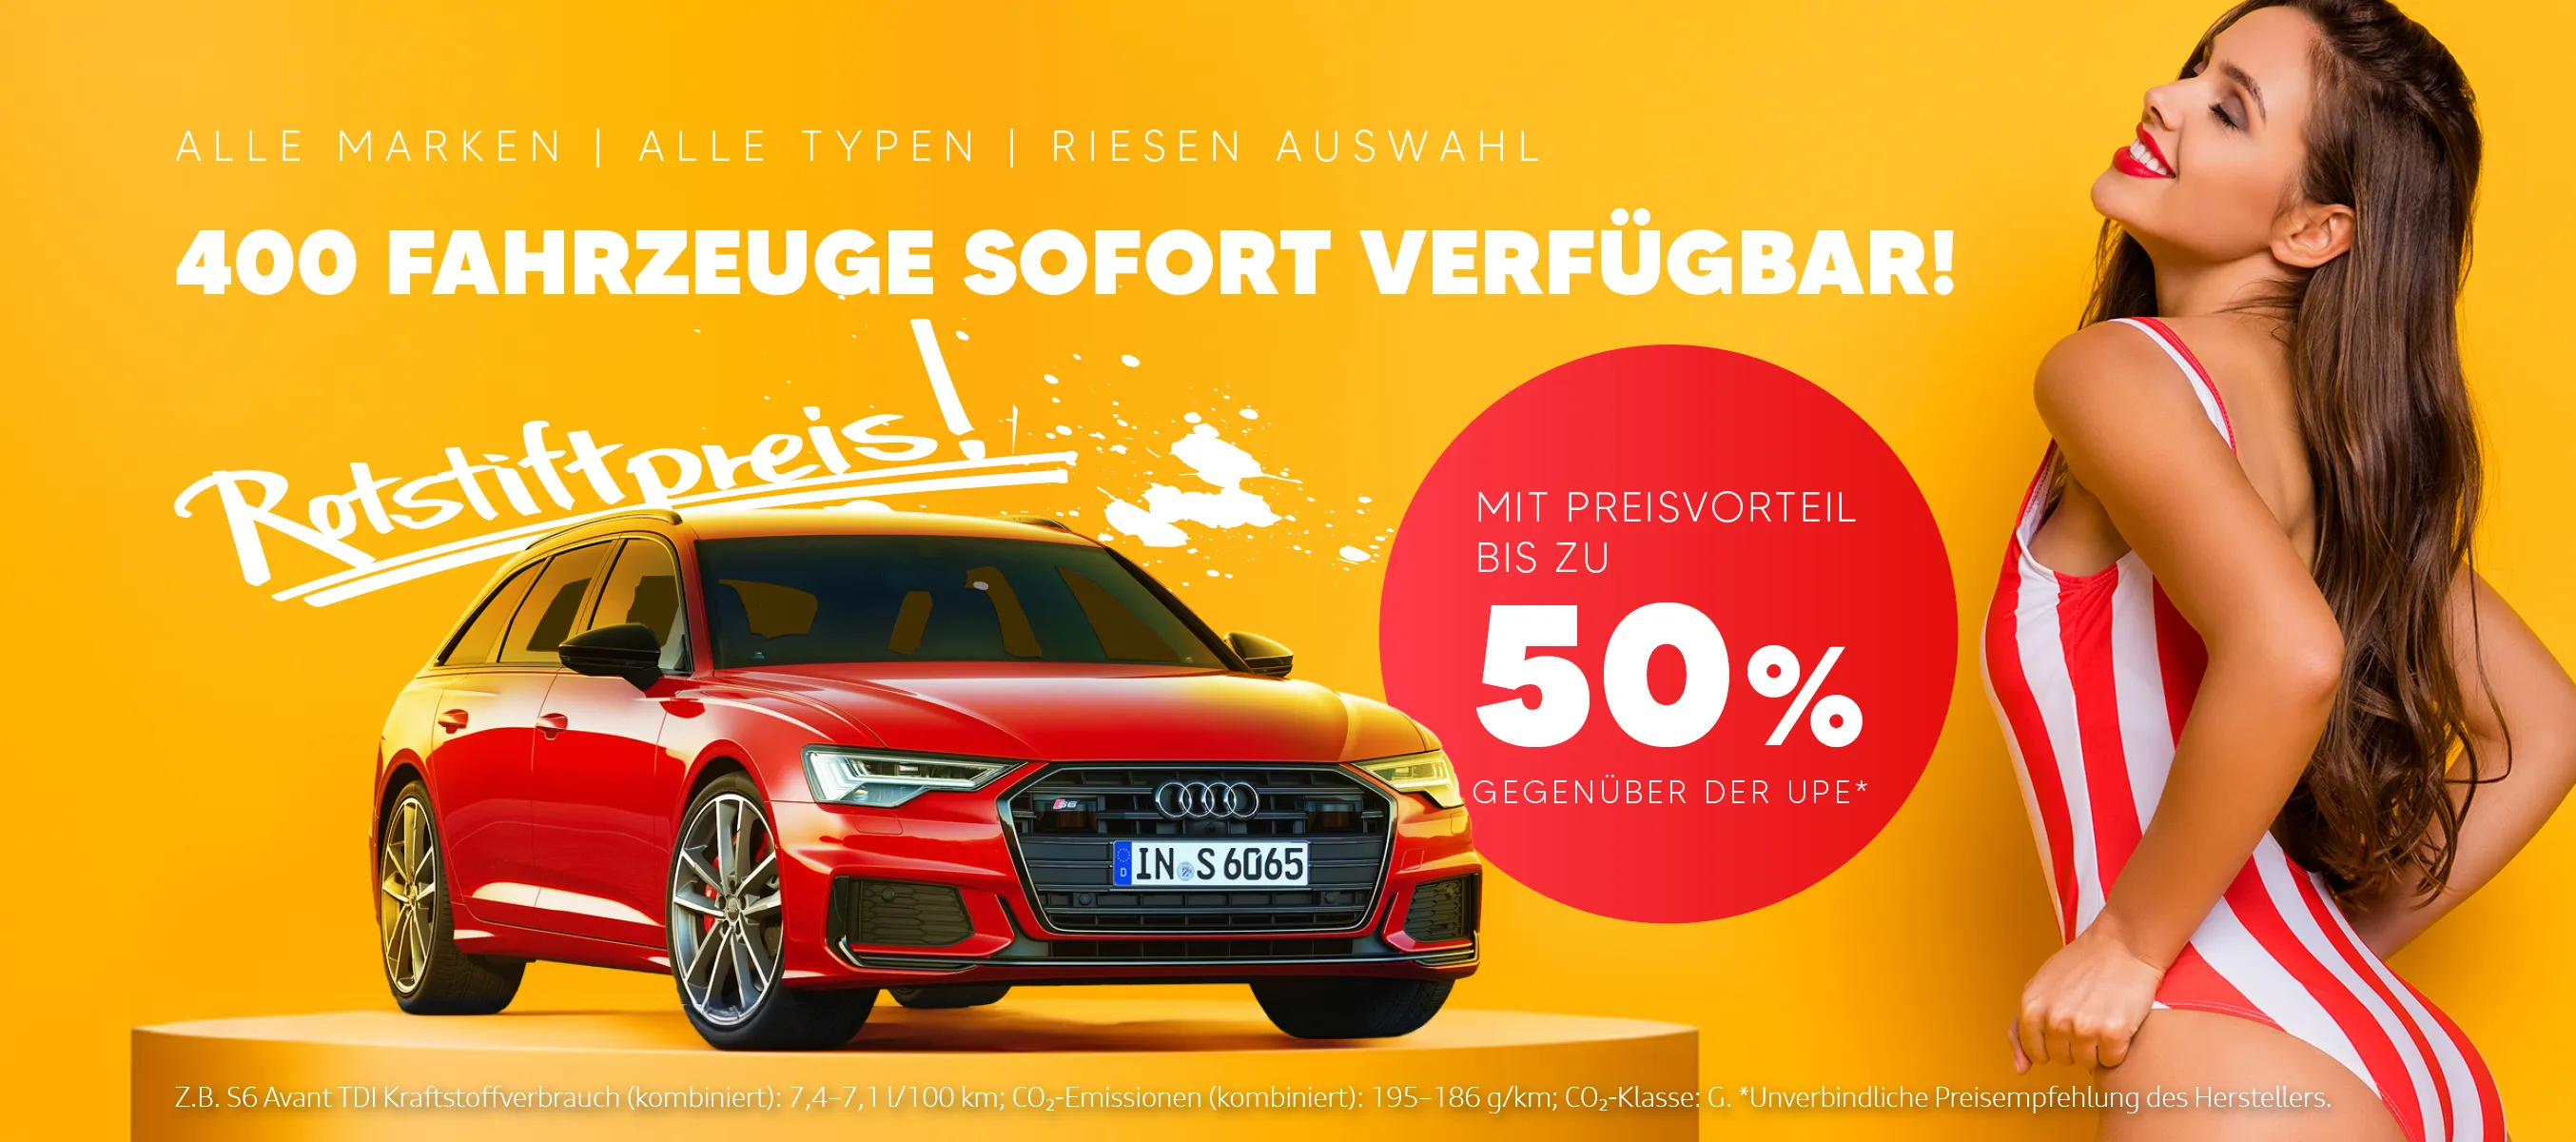 Rotstiftpreise im Autohaus Matticzk in Bautzen - Riesen Auswahl an Fahrzeugen PKW alle Marken Volkswagen Audi Skoda SEAT mit Preisreduzierung 50% unter UPE